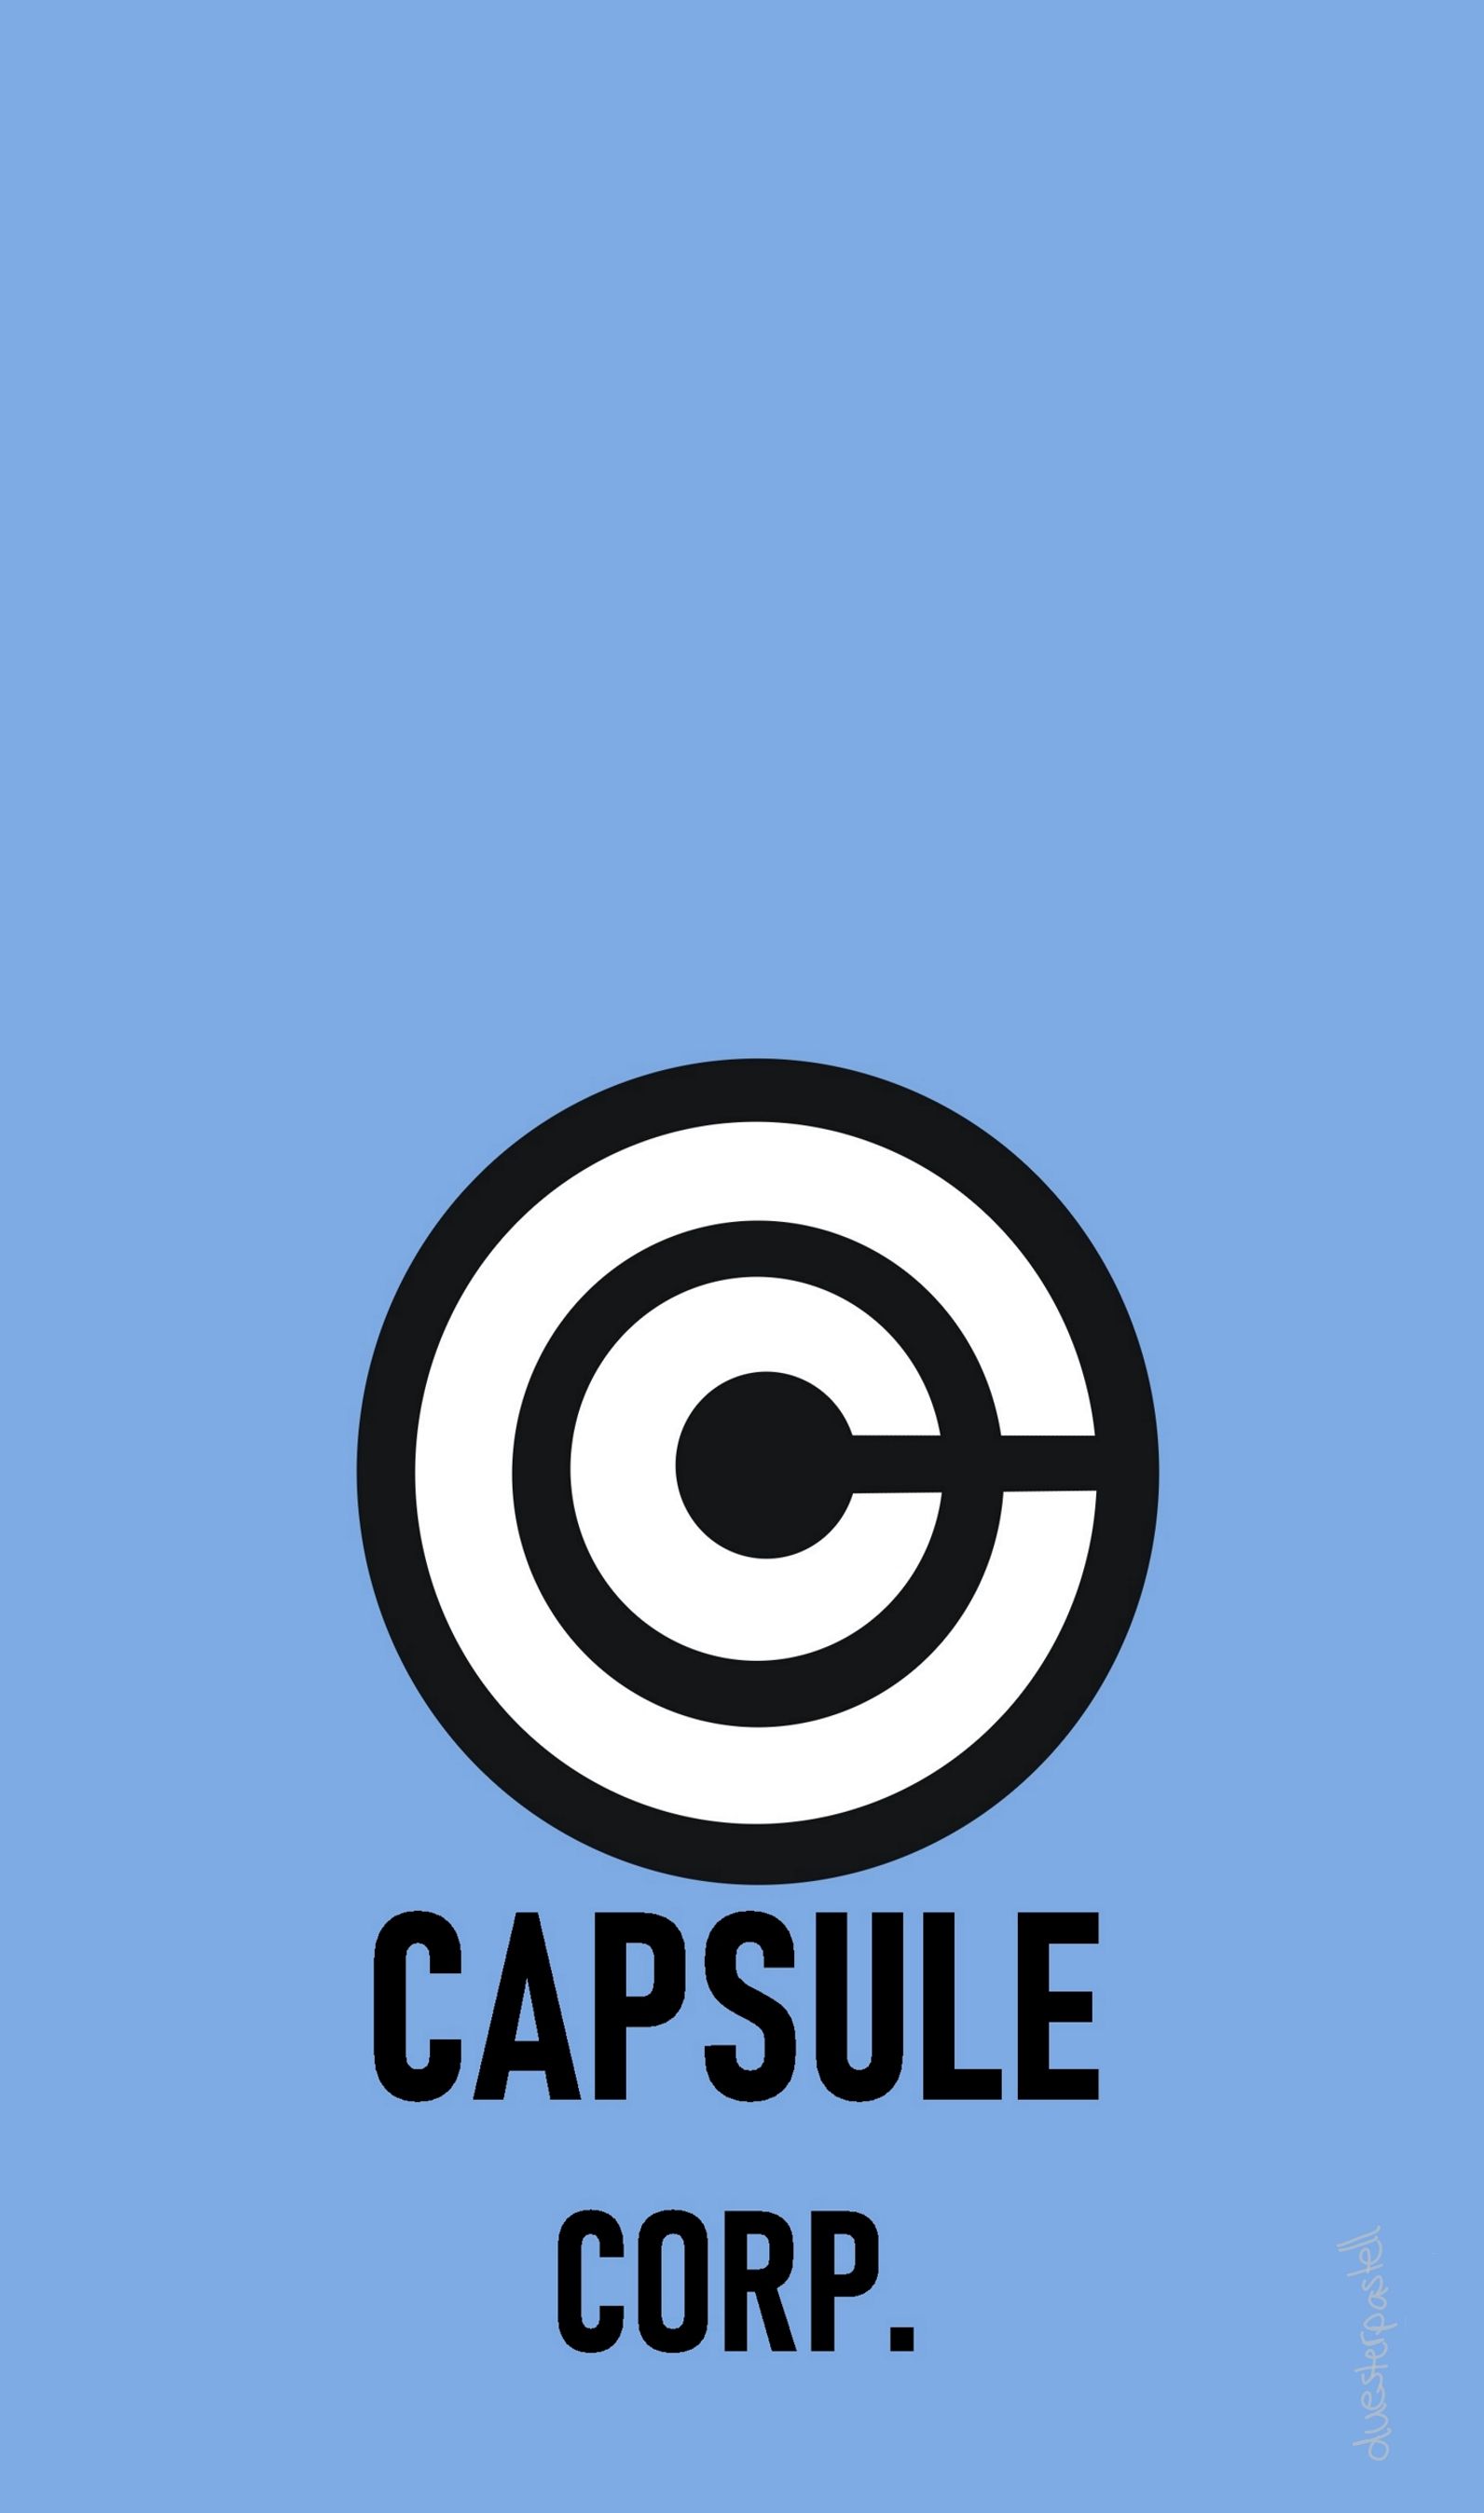 dbz capsule corp. British leyland logo, Vehicle logos, Capsule